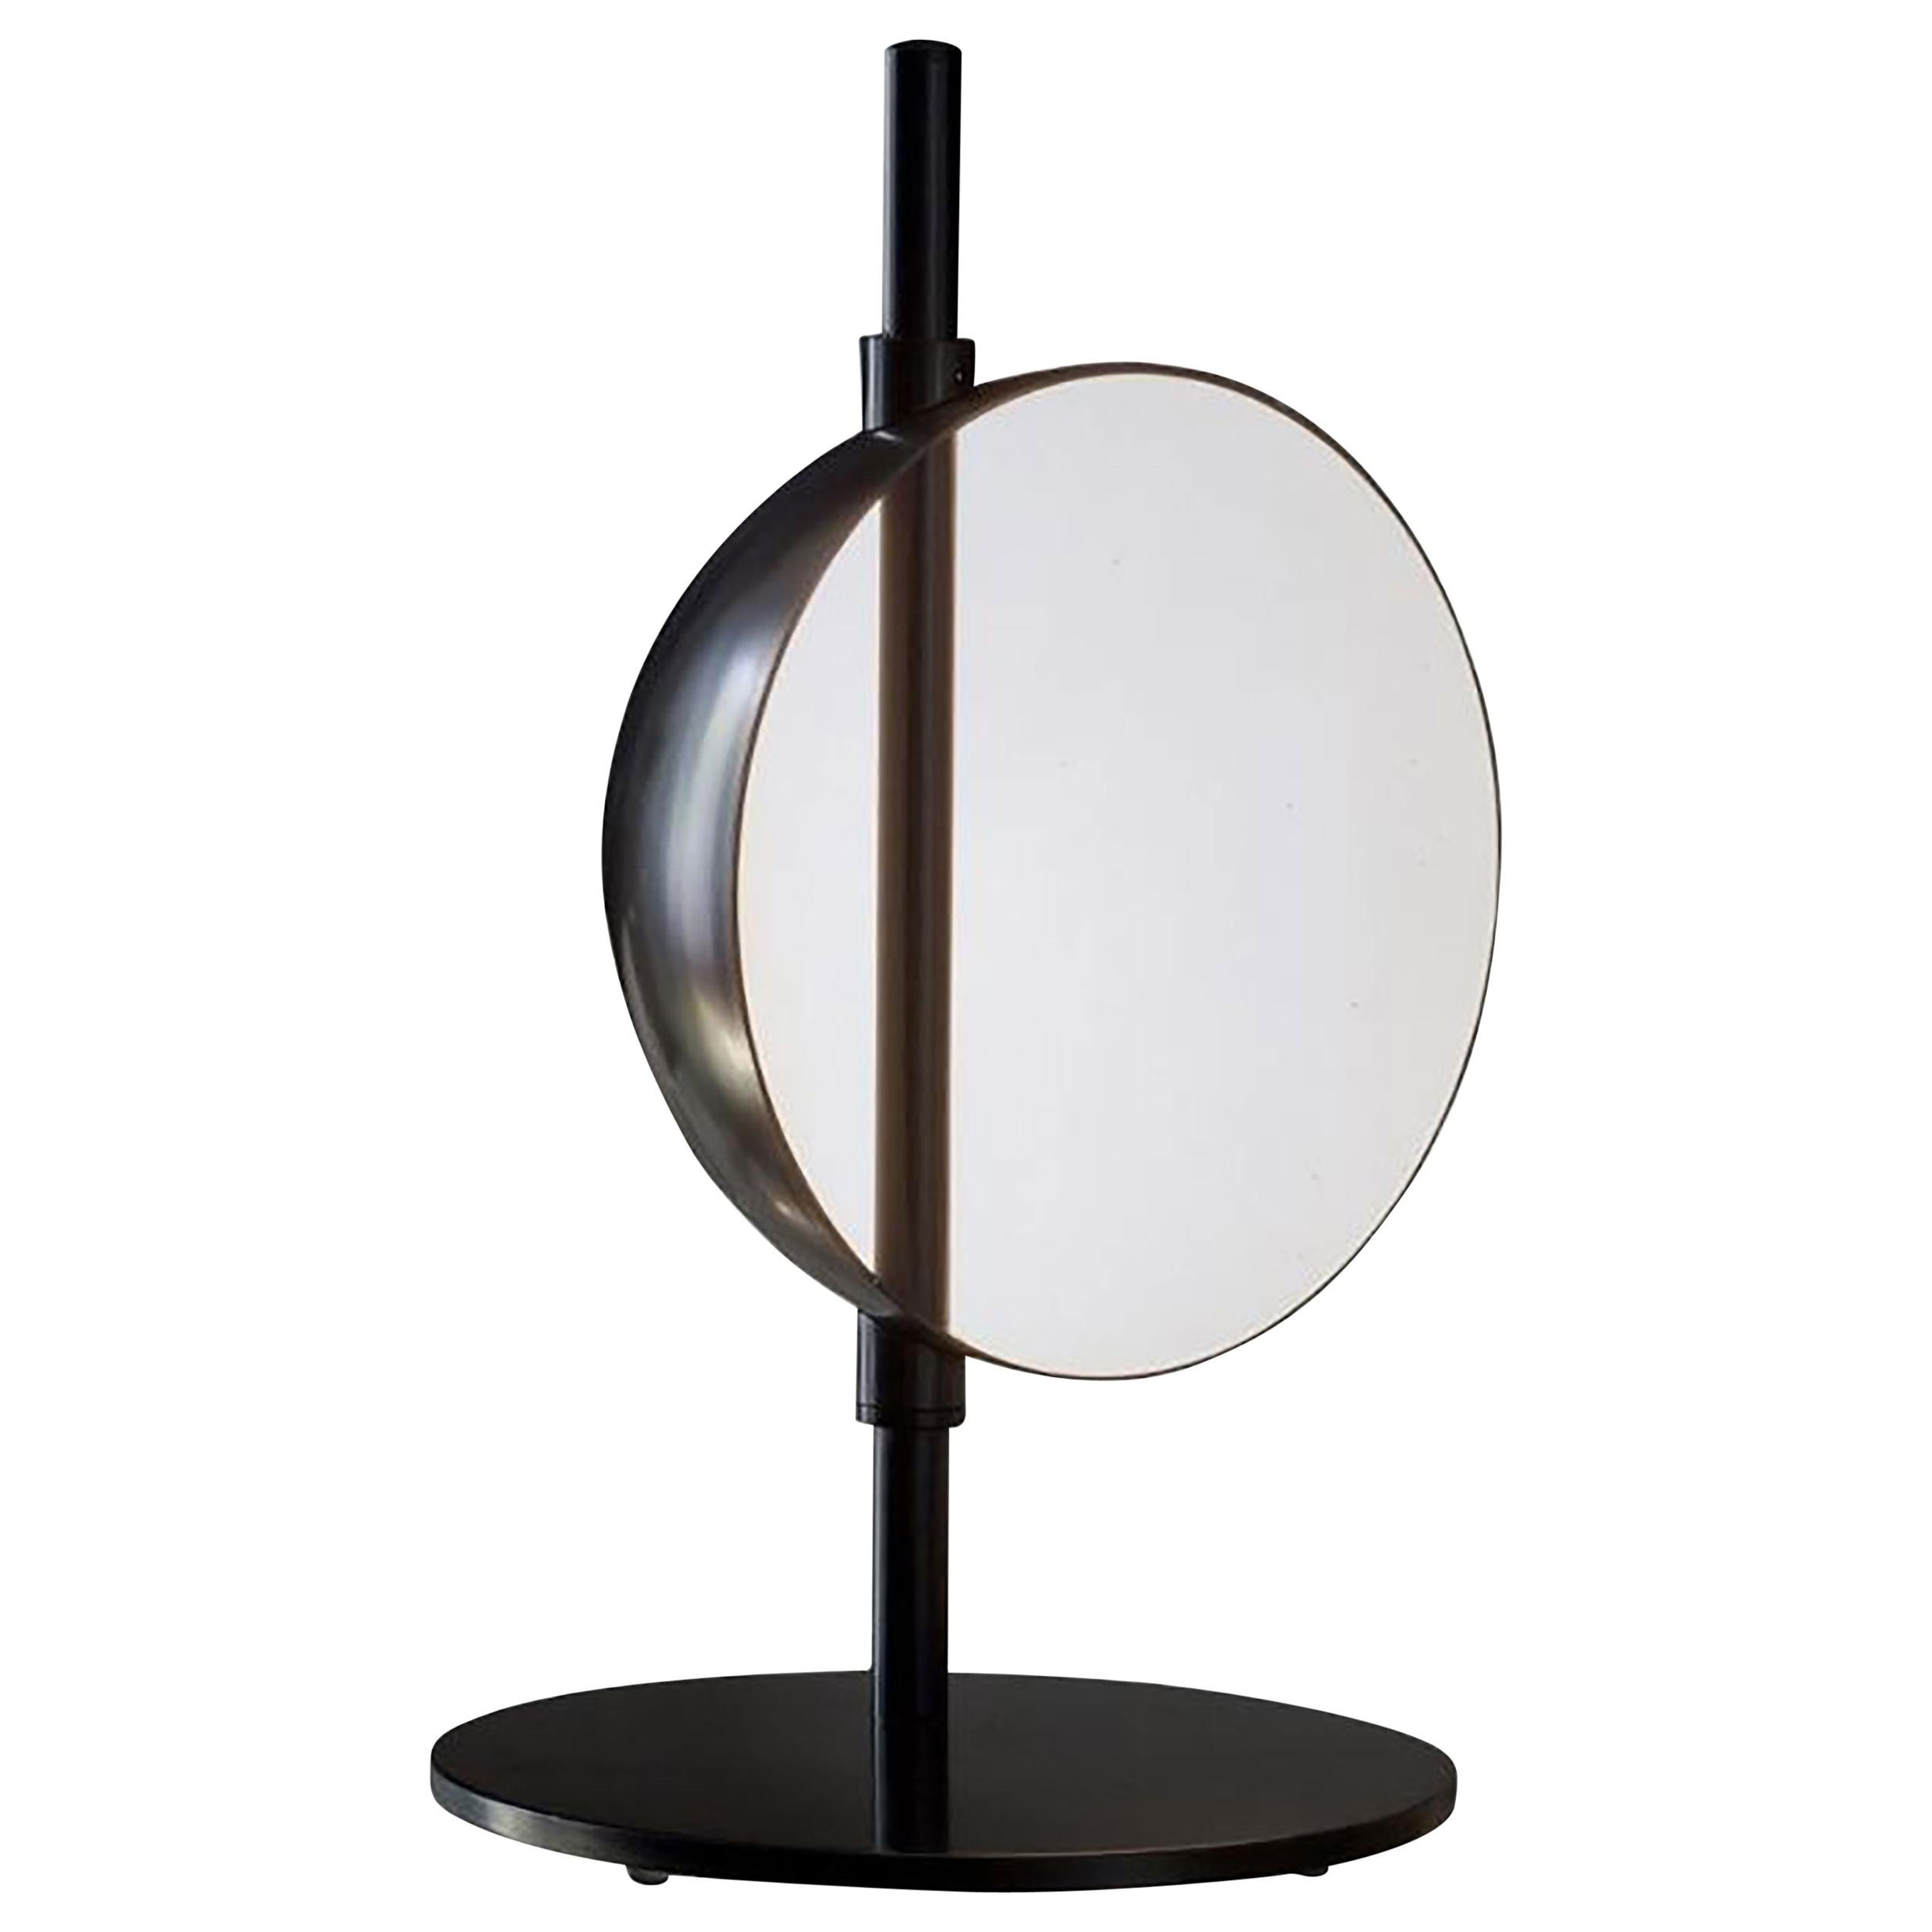 Superluna Table Lamp by Victor Vasilev for Oluce